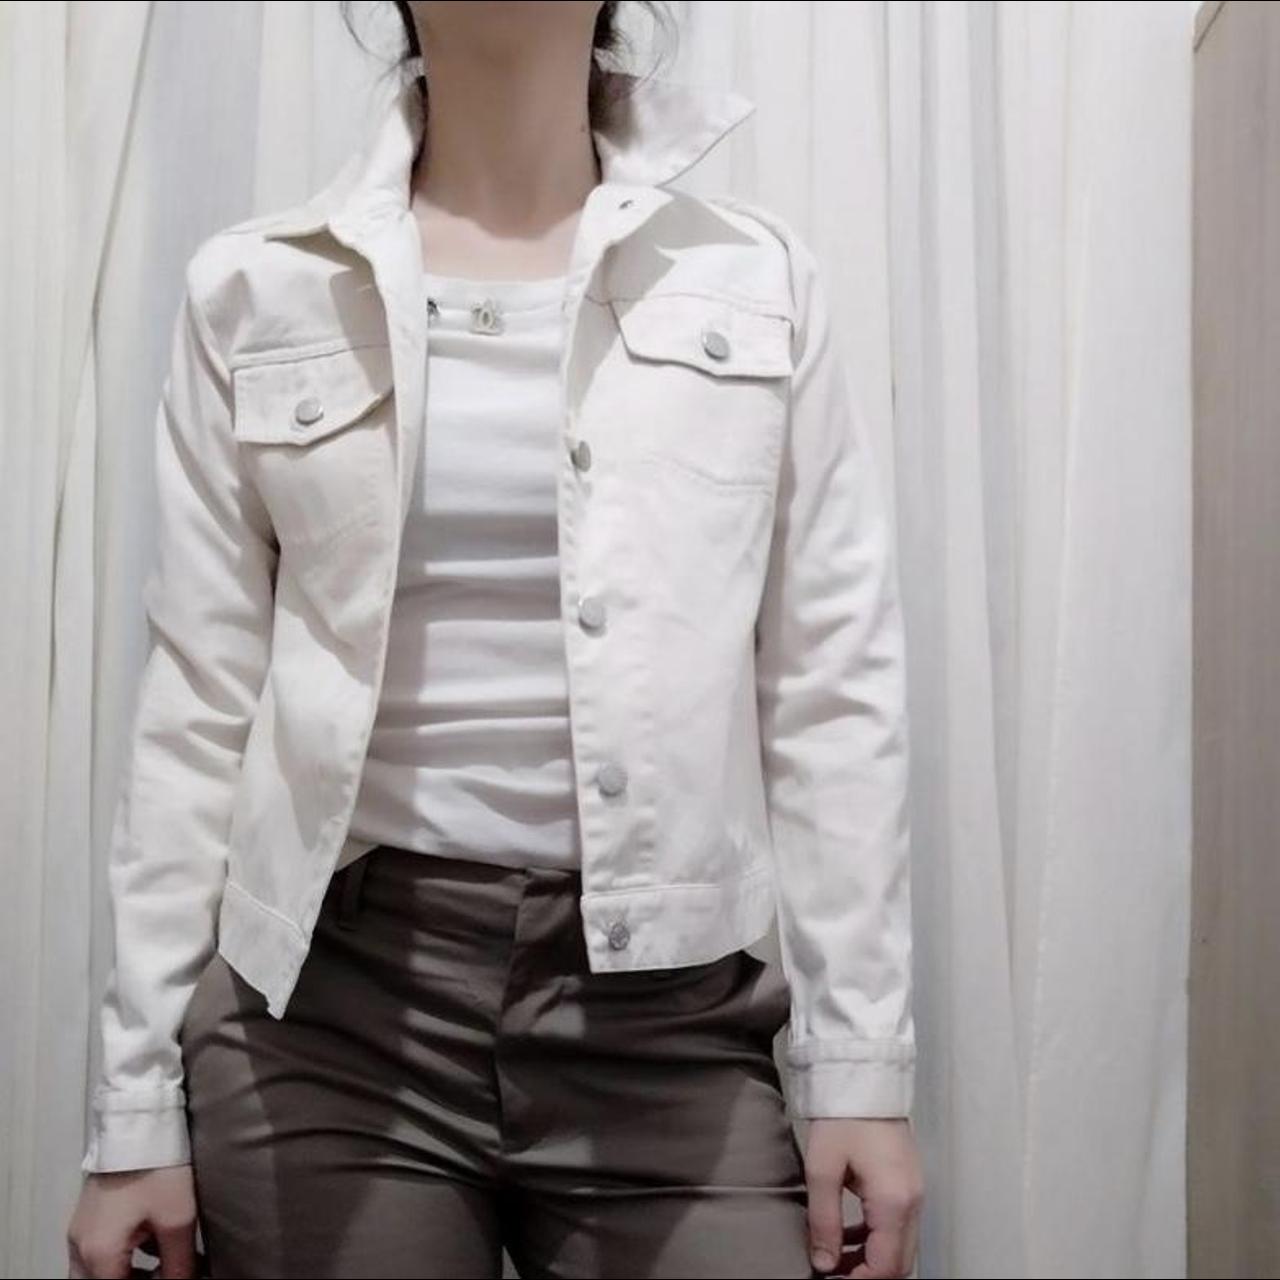 Vintage Helmut Lang Denim Jacket in an off white...